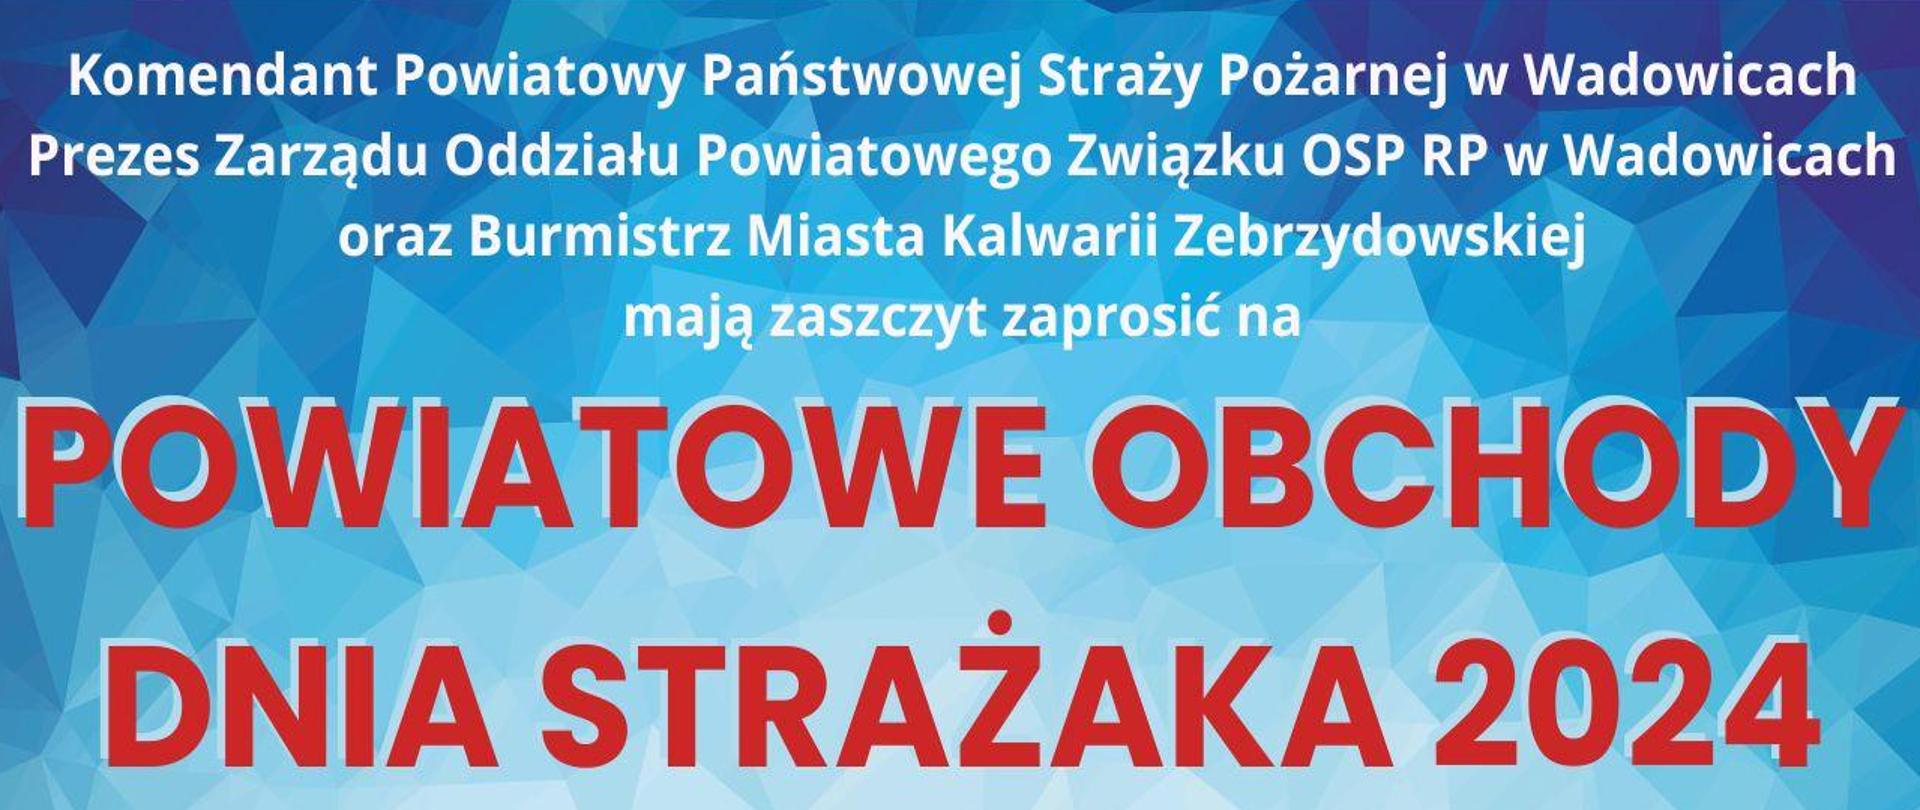 Plakat - zaproszenie na Powiatowe Obchody Dnia Strażaka 2024 o treści zgodnej z treścią artykułu. 